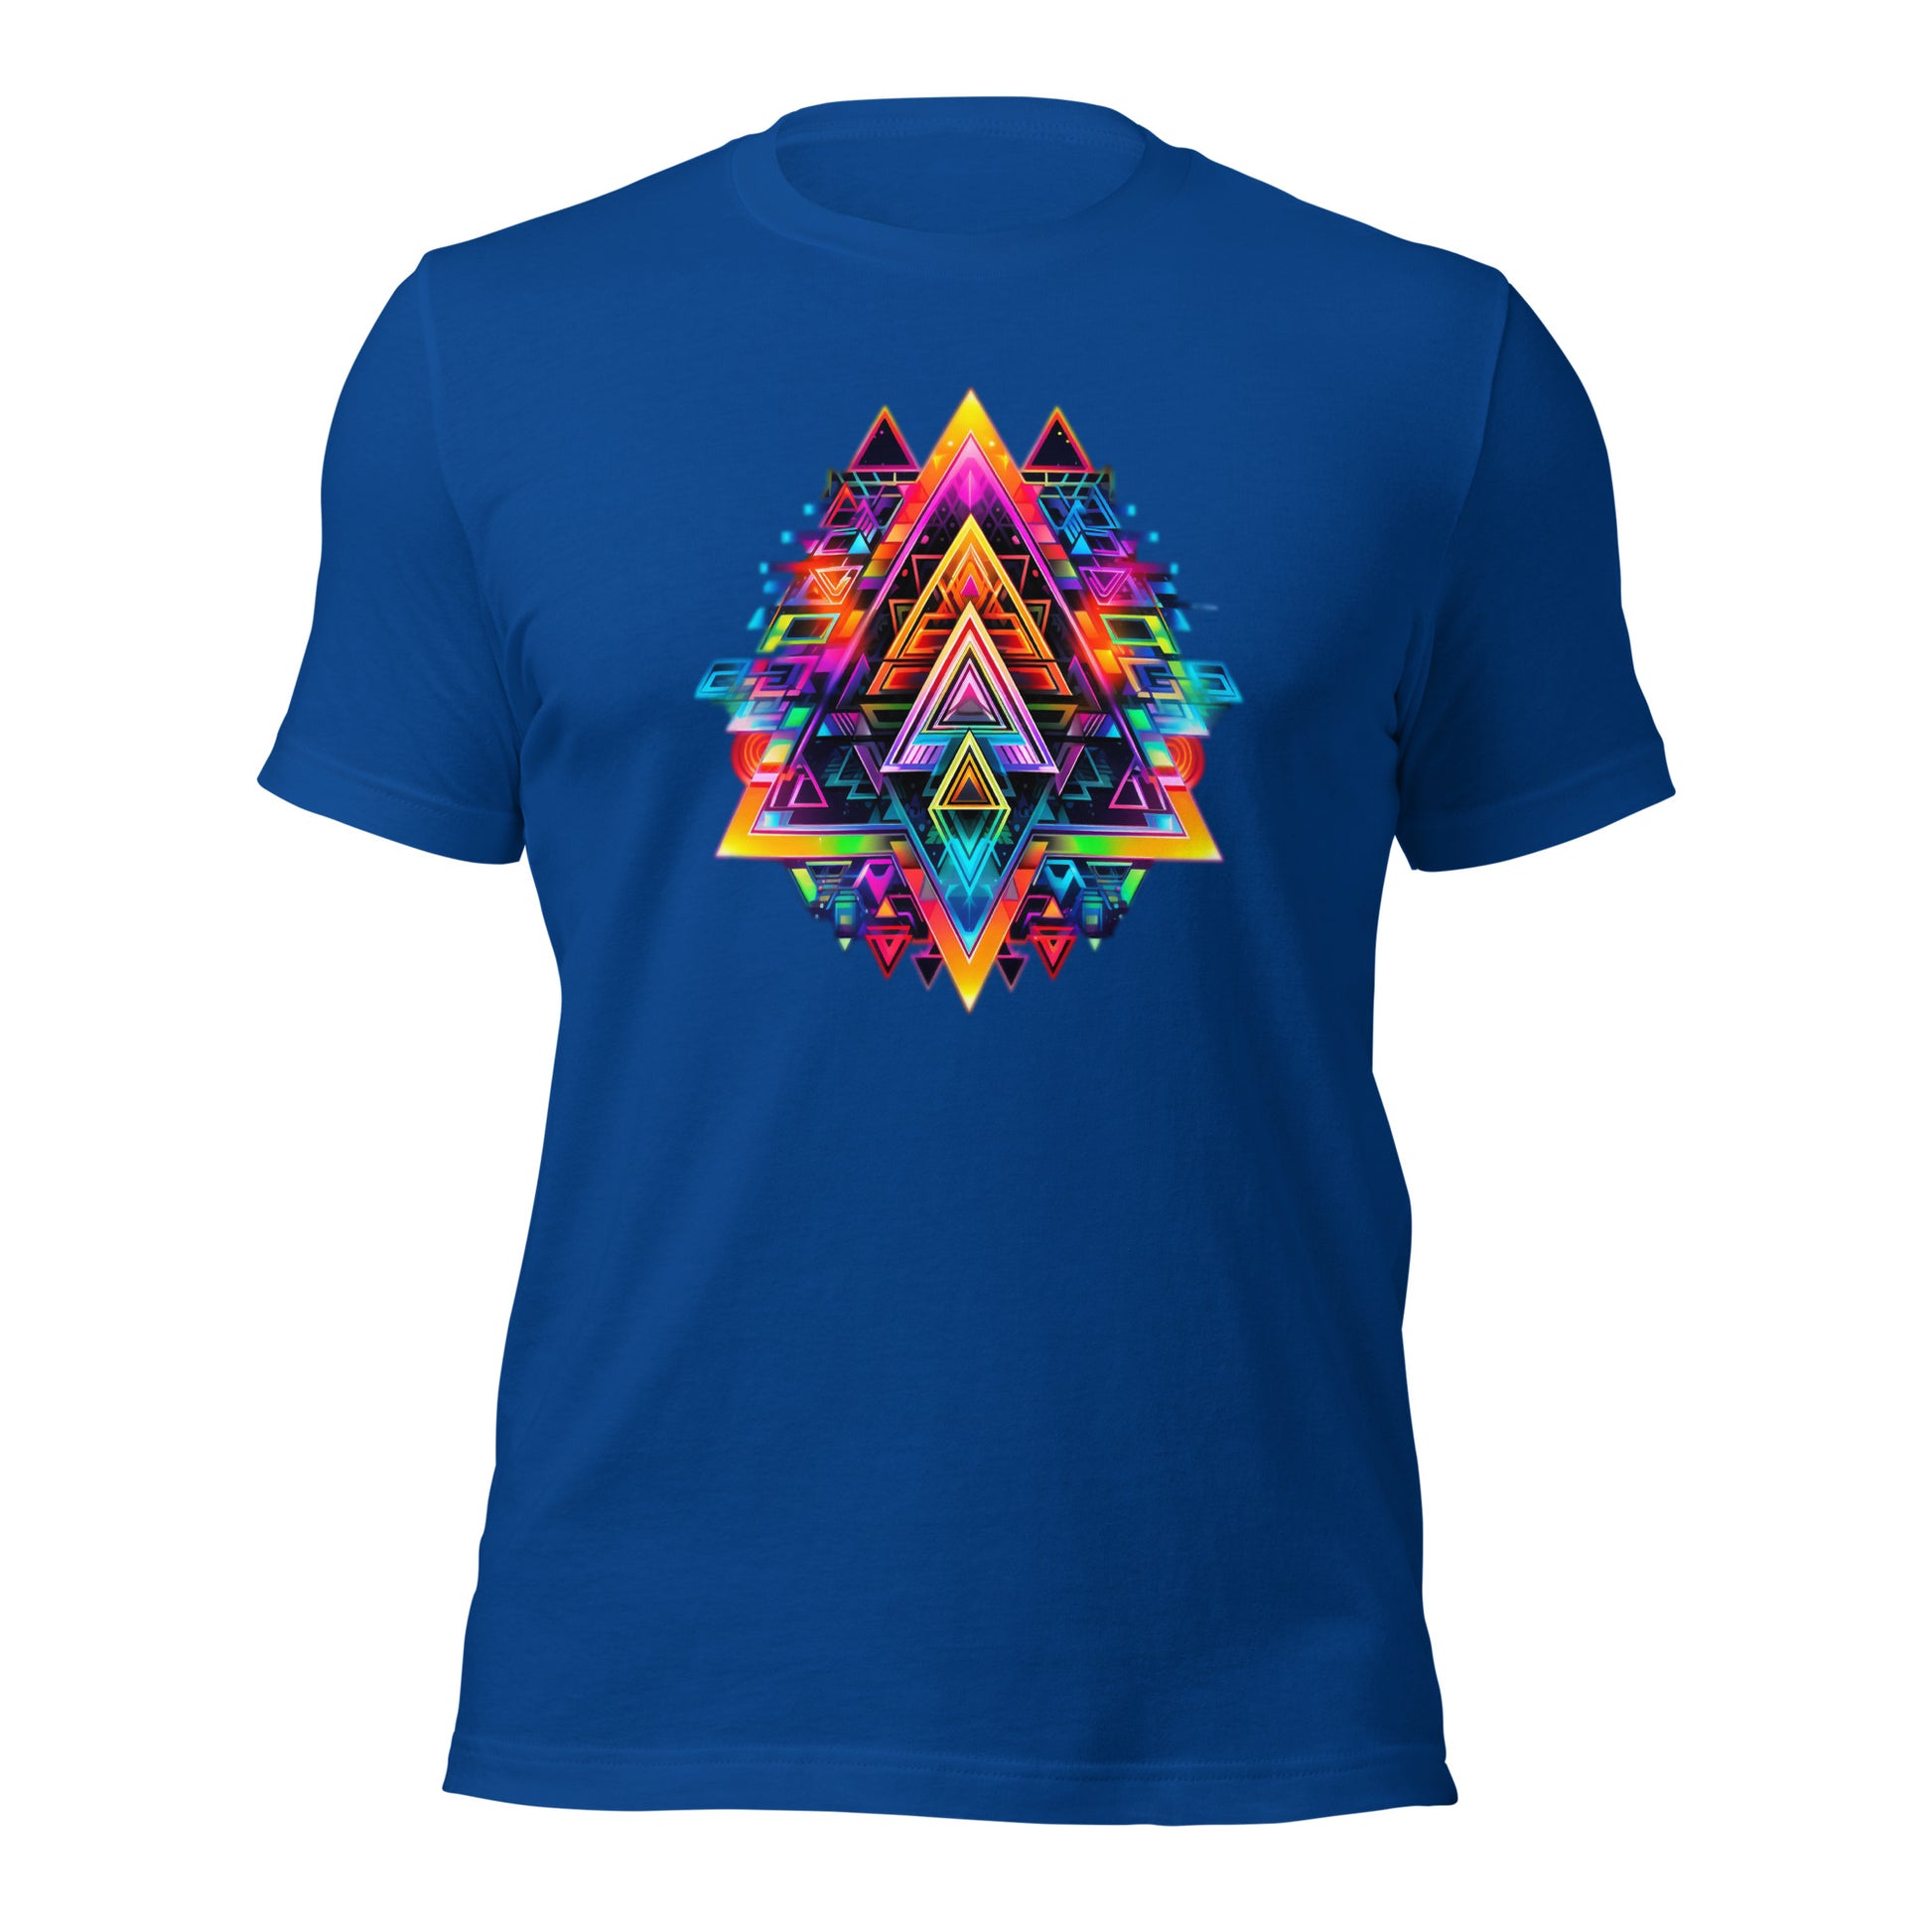 Een koningsblauw unisex T-shirt met een grafisch geometrisch ontwerp op de voorkant en een witte achtergrond.